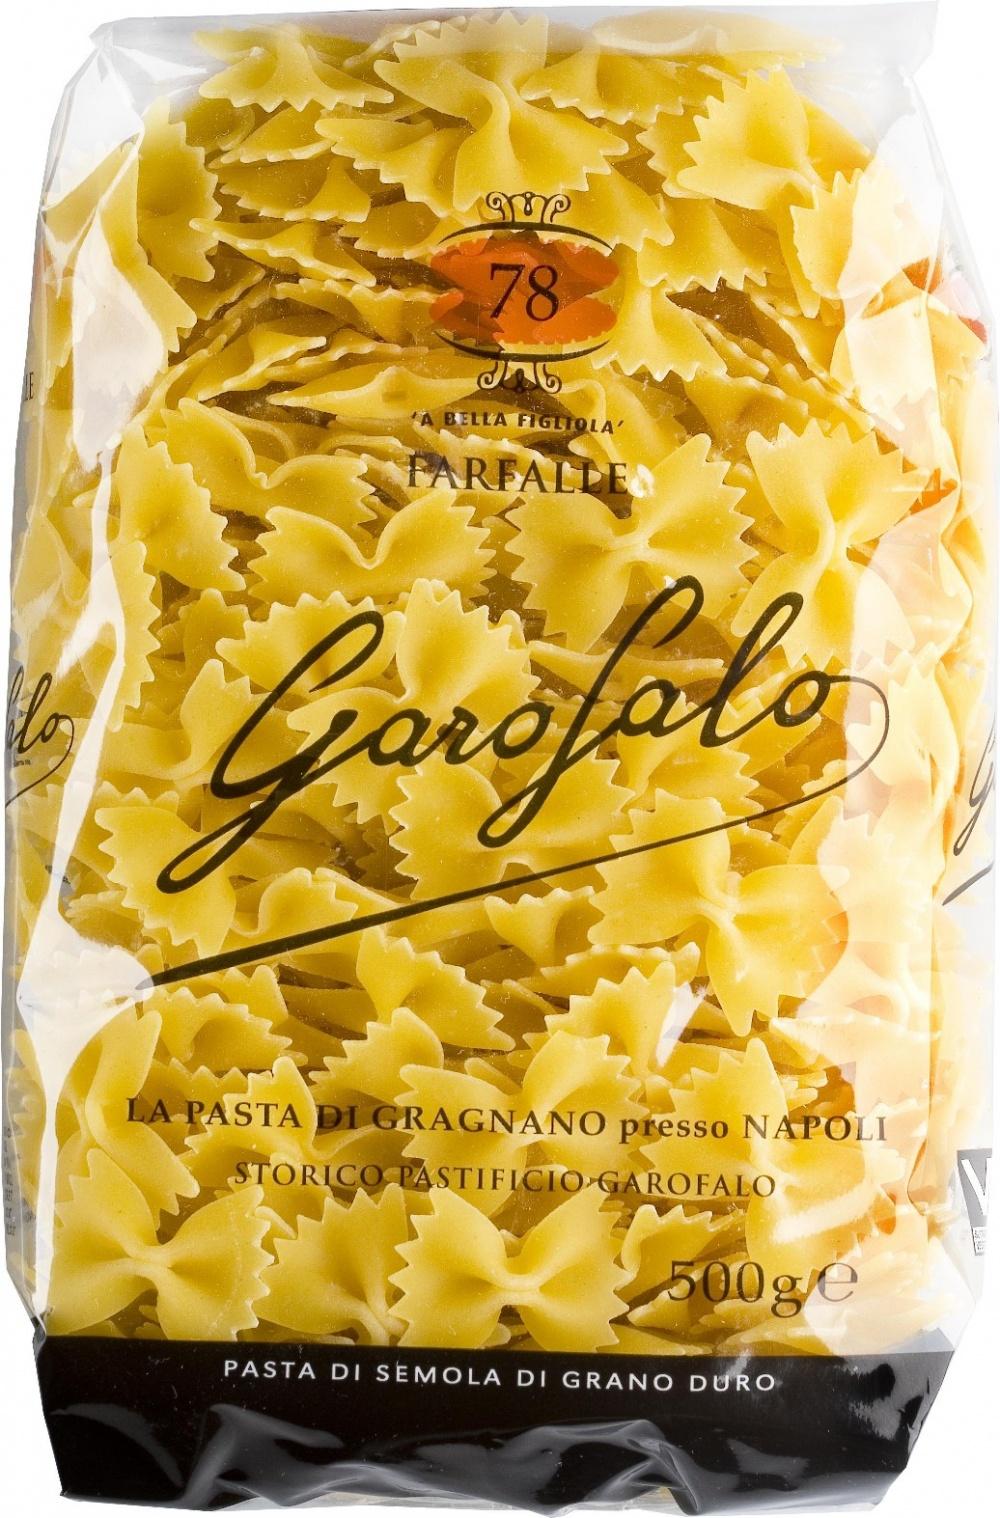 Макаронные изделия Garofalo №78 фарфалле, 500 гр., пластиковый пакет